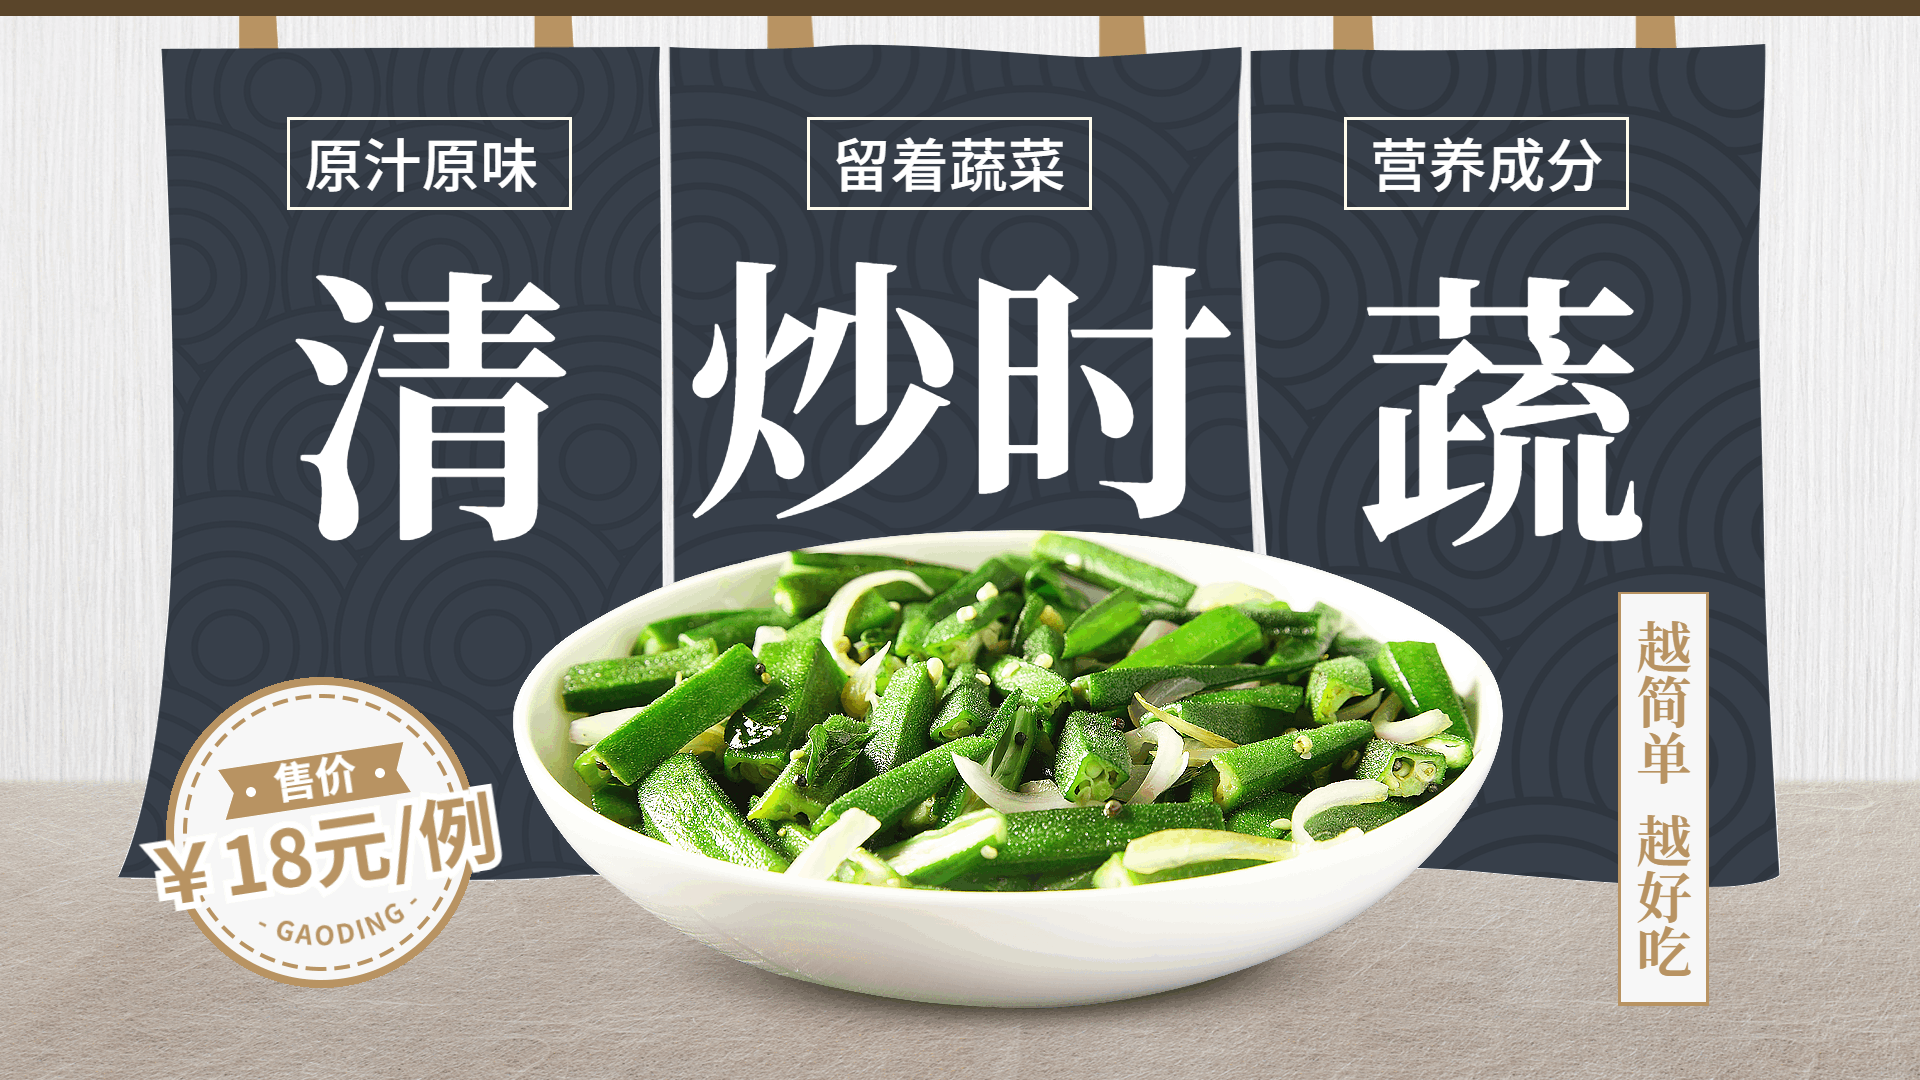 中餐餐厅菜品推荐简约创意横屏动图